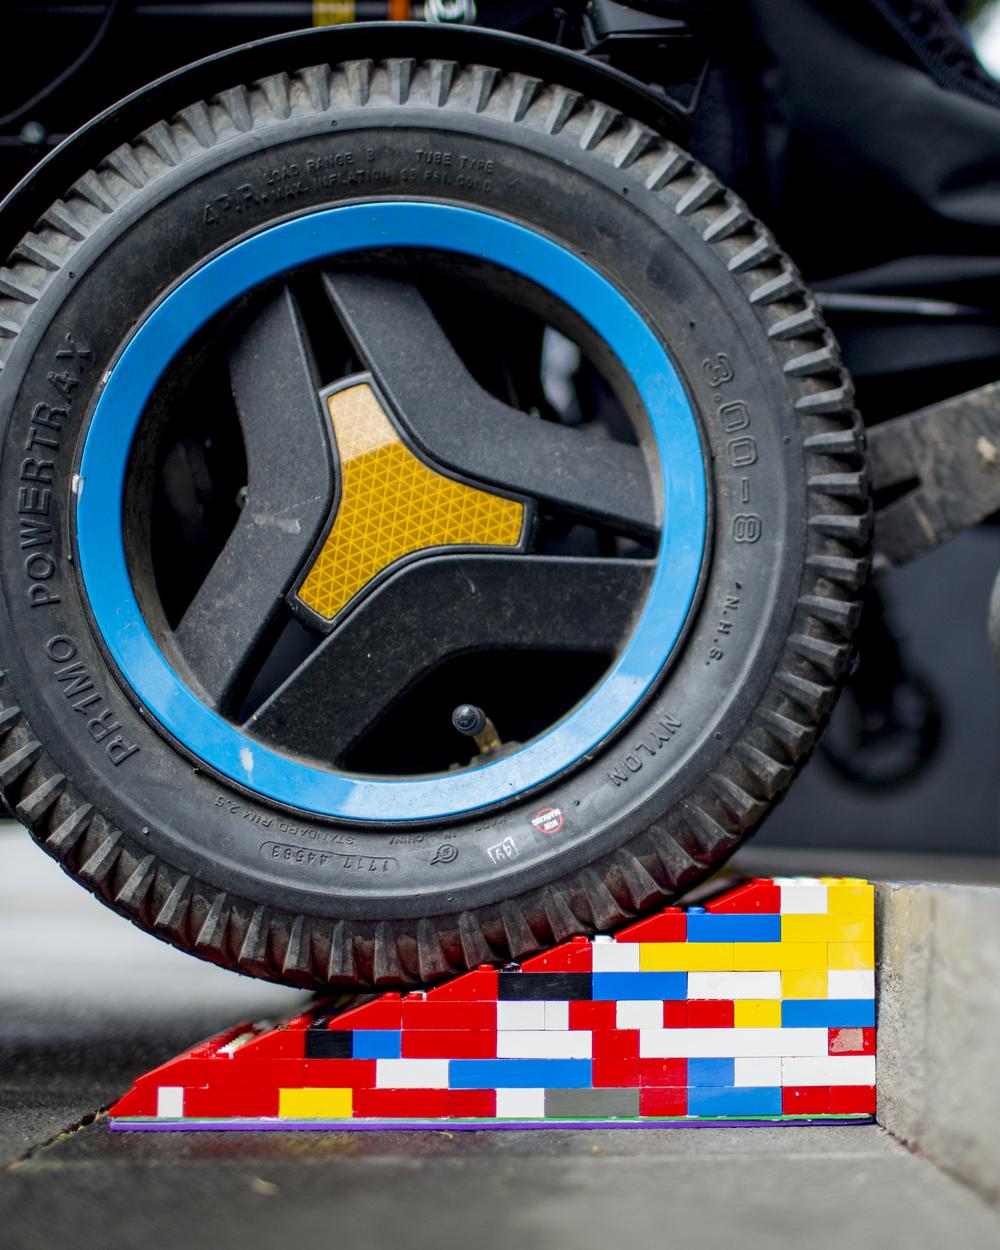 Eine Legorampe vor einer Stufe. Im Anschnitt ist der Reifen eines Elektrorollstuhls, der über die Rampe rollt.